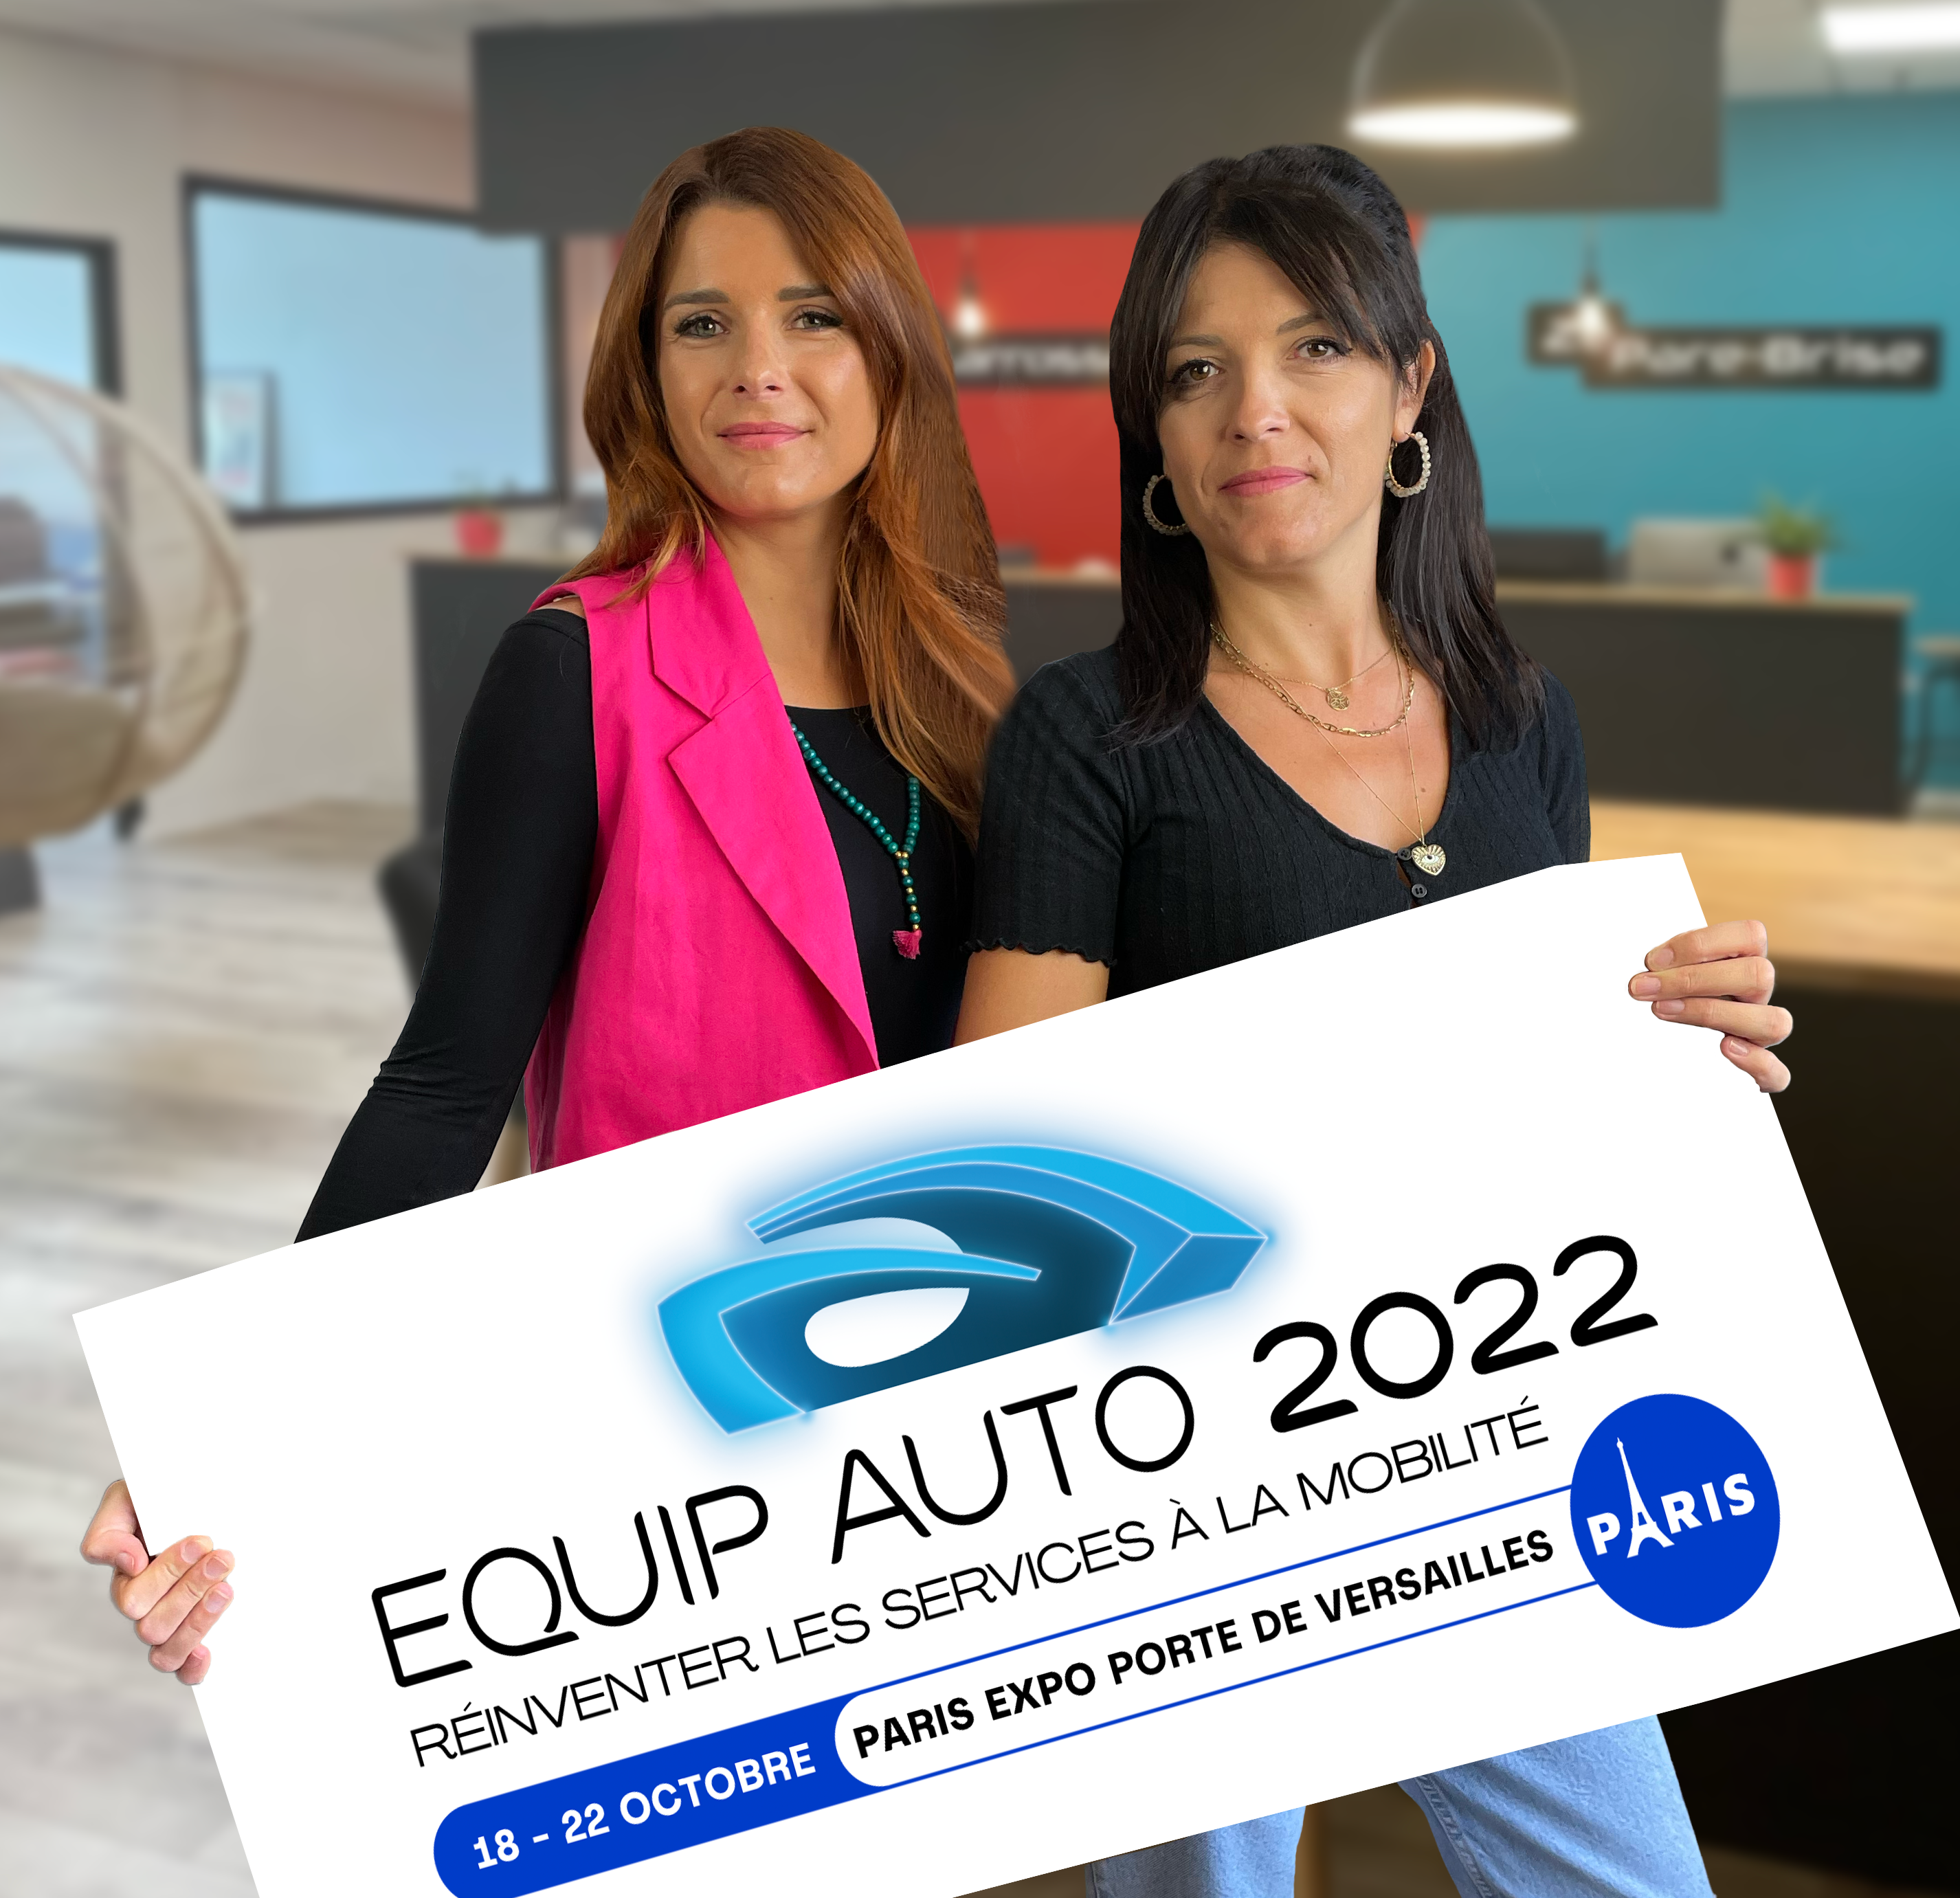 Photo des deux fondatrices tenant une pancarte Equip Auto